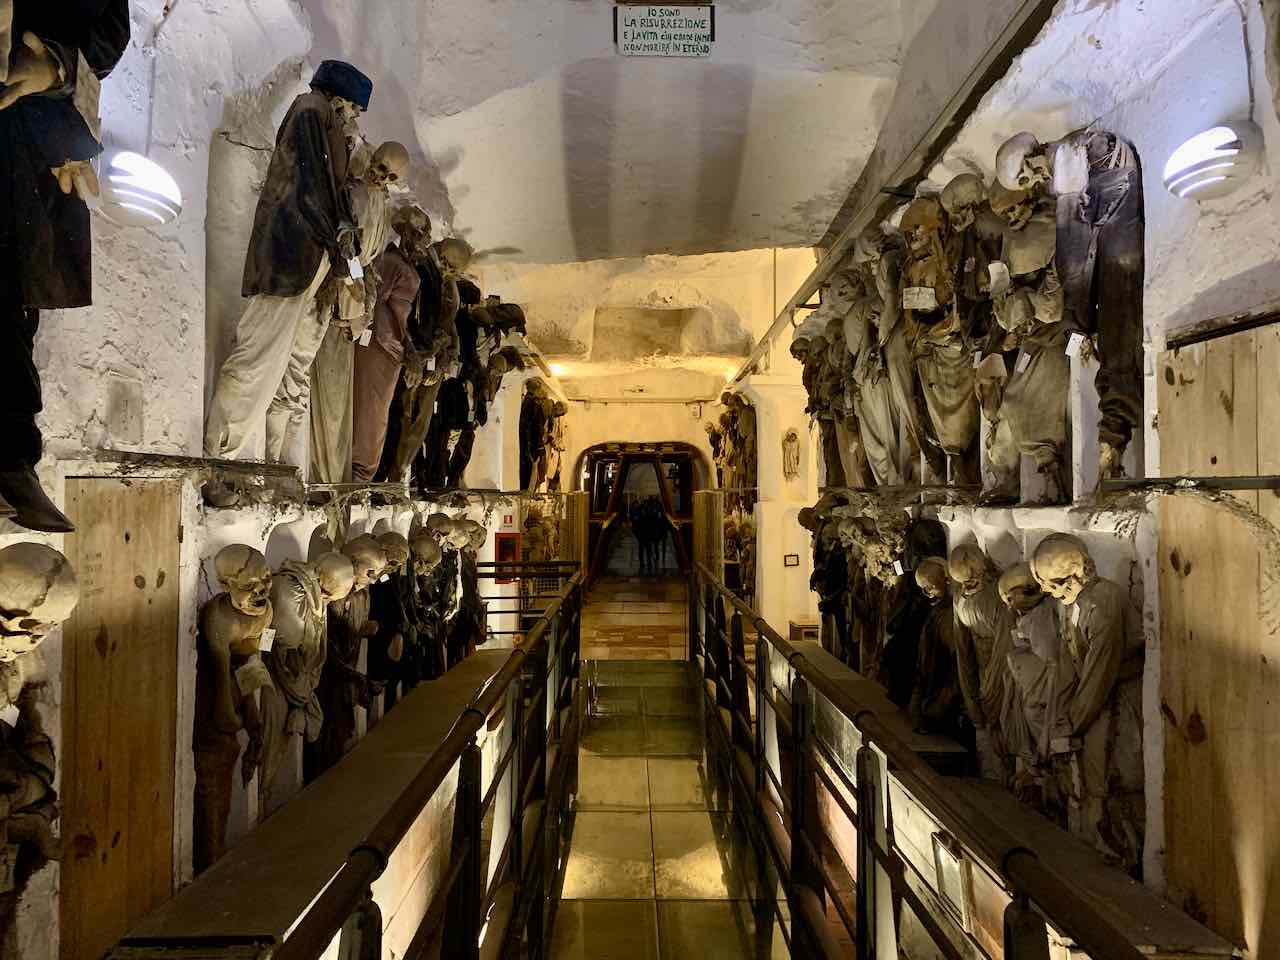 Palermo: Mumien in der Kapuzinergruft